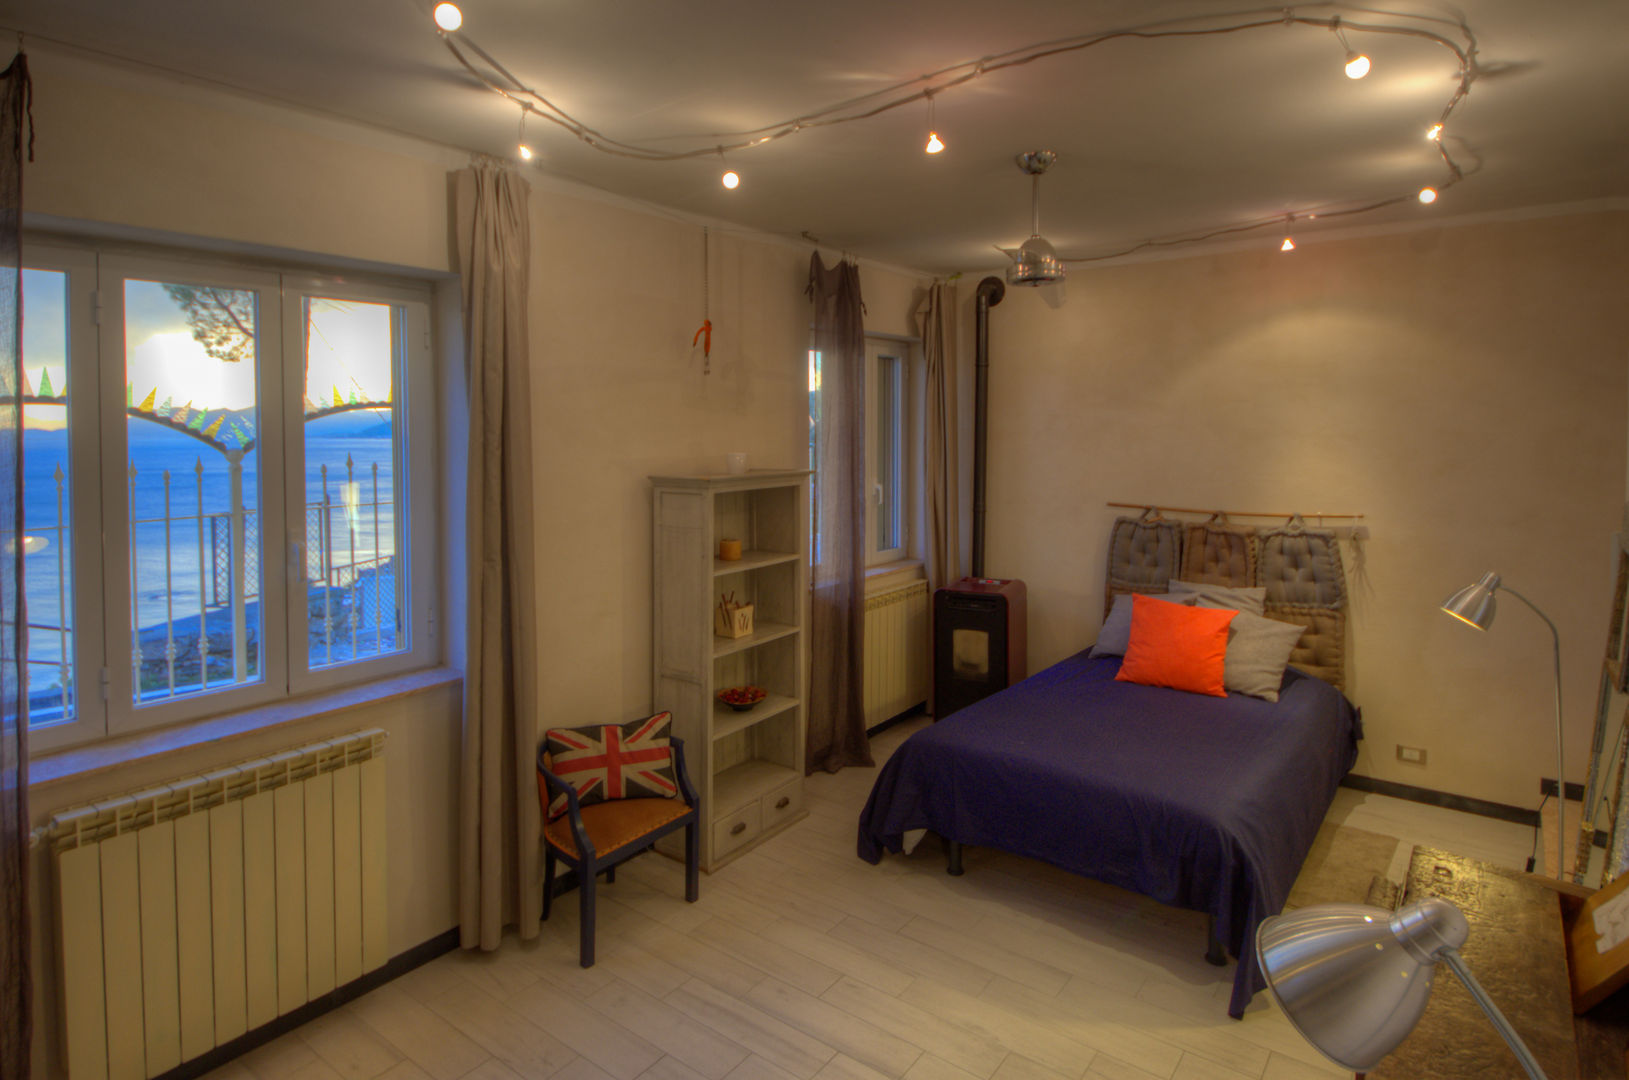 Villa , Emilio Rescigno - Fotografia Immobiliare Emilio Rescigno - Fotografia Immobiliare Rustic style bedroom Beds & headboards